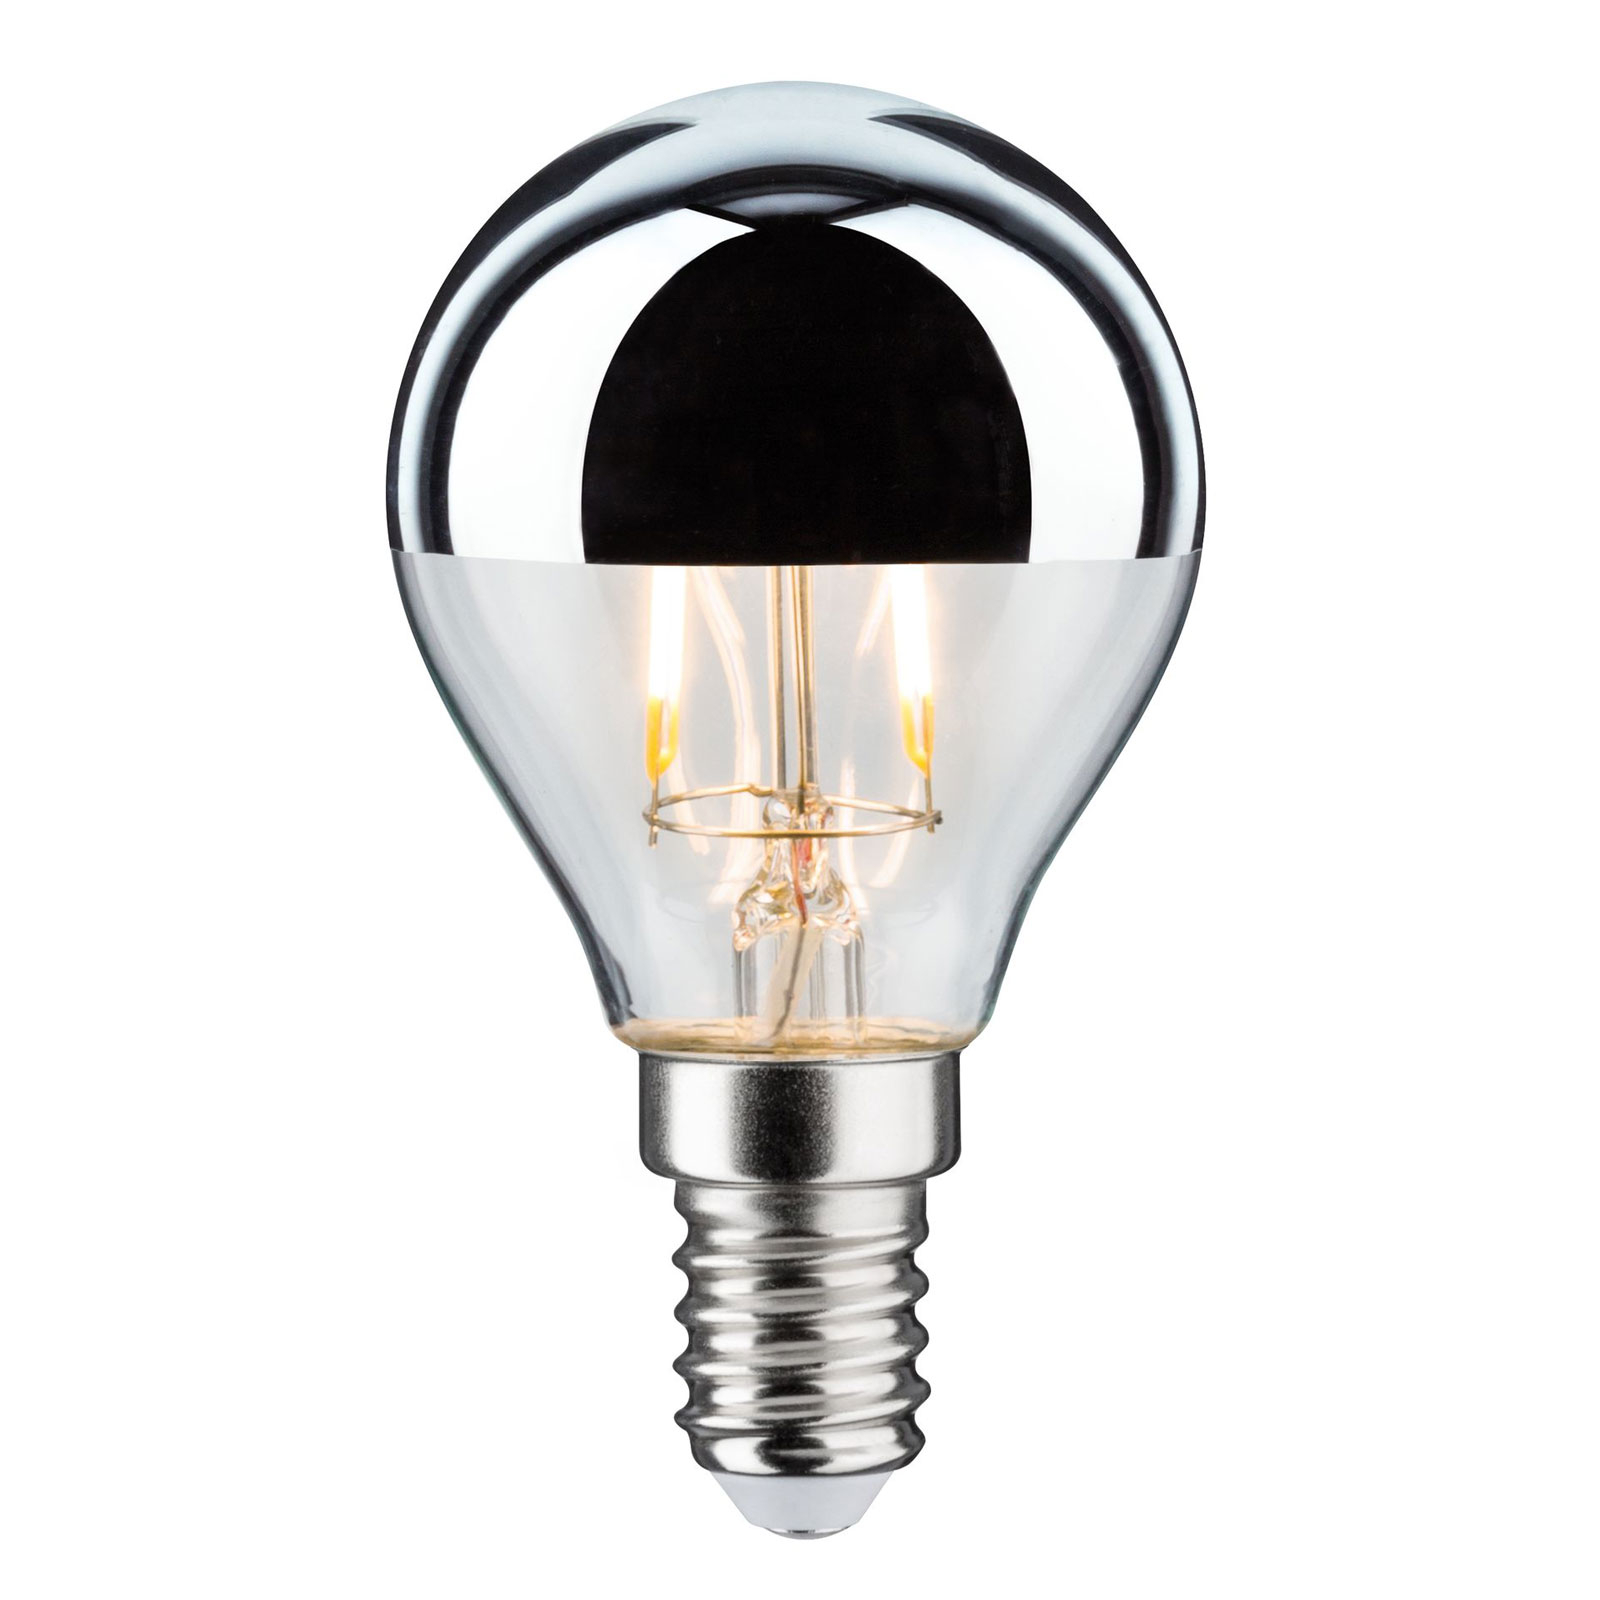 Doe een poging Prematuur ik zal sterk zijn LED lamp E14 827 Druppel kopspiegel zilver 2,6W | Lampen24.be